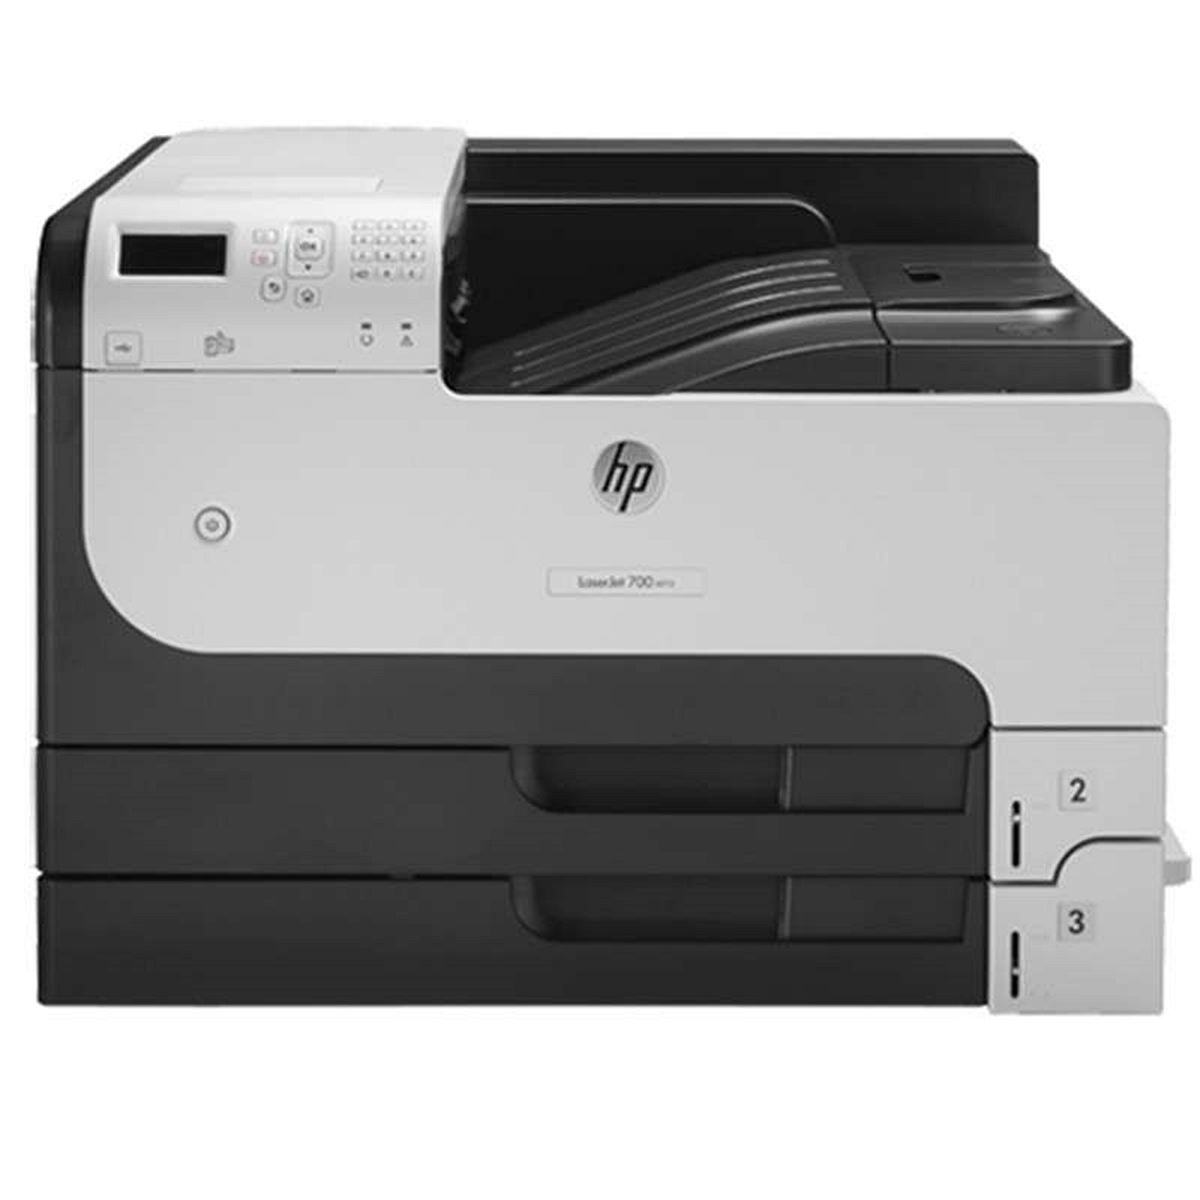 惠普HP712dn黑白激光打印机(台)